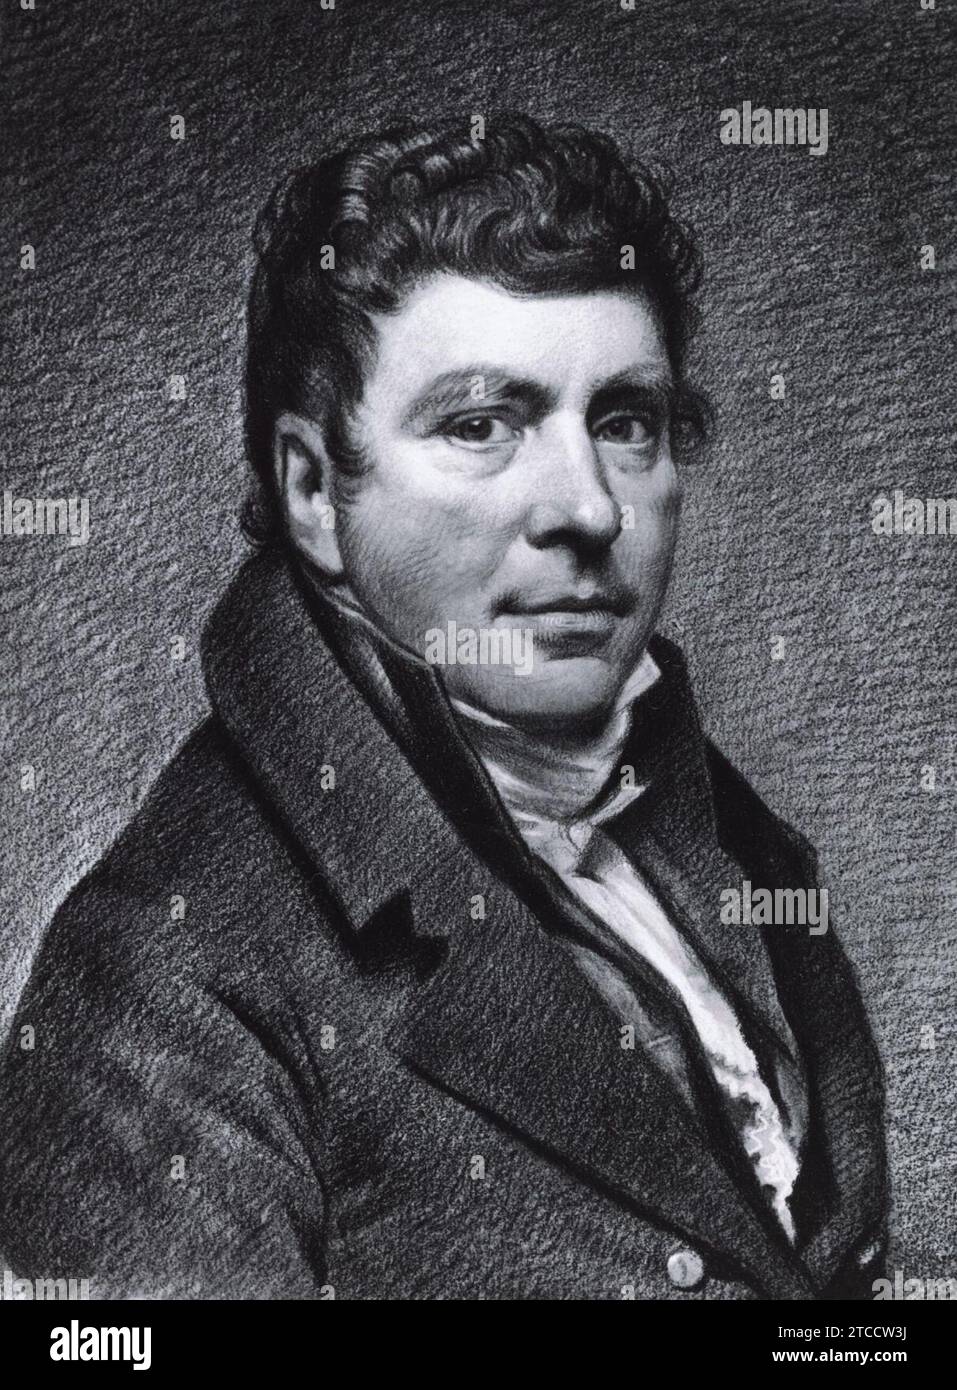 Willem Bartel van der Kooi - Zelfportret. Stockfoto